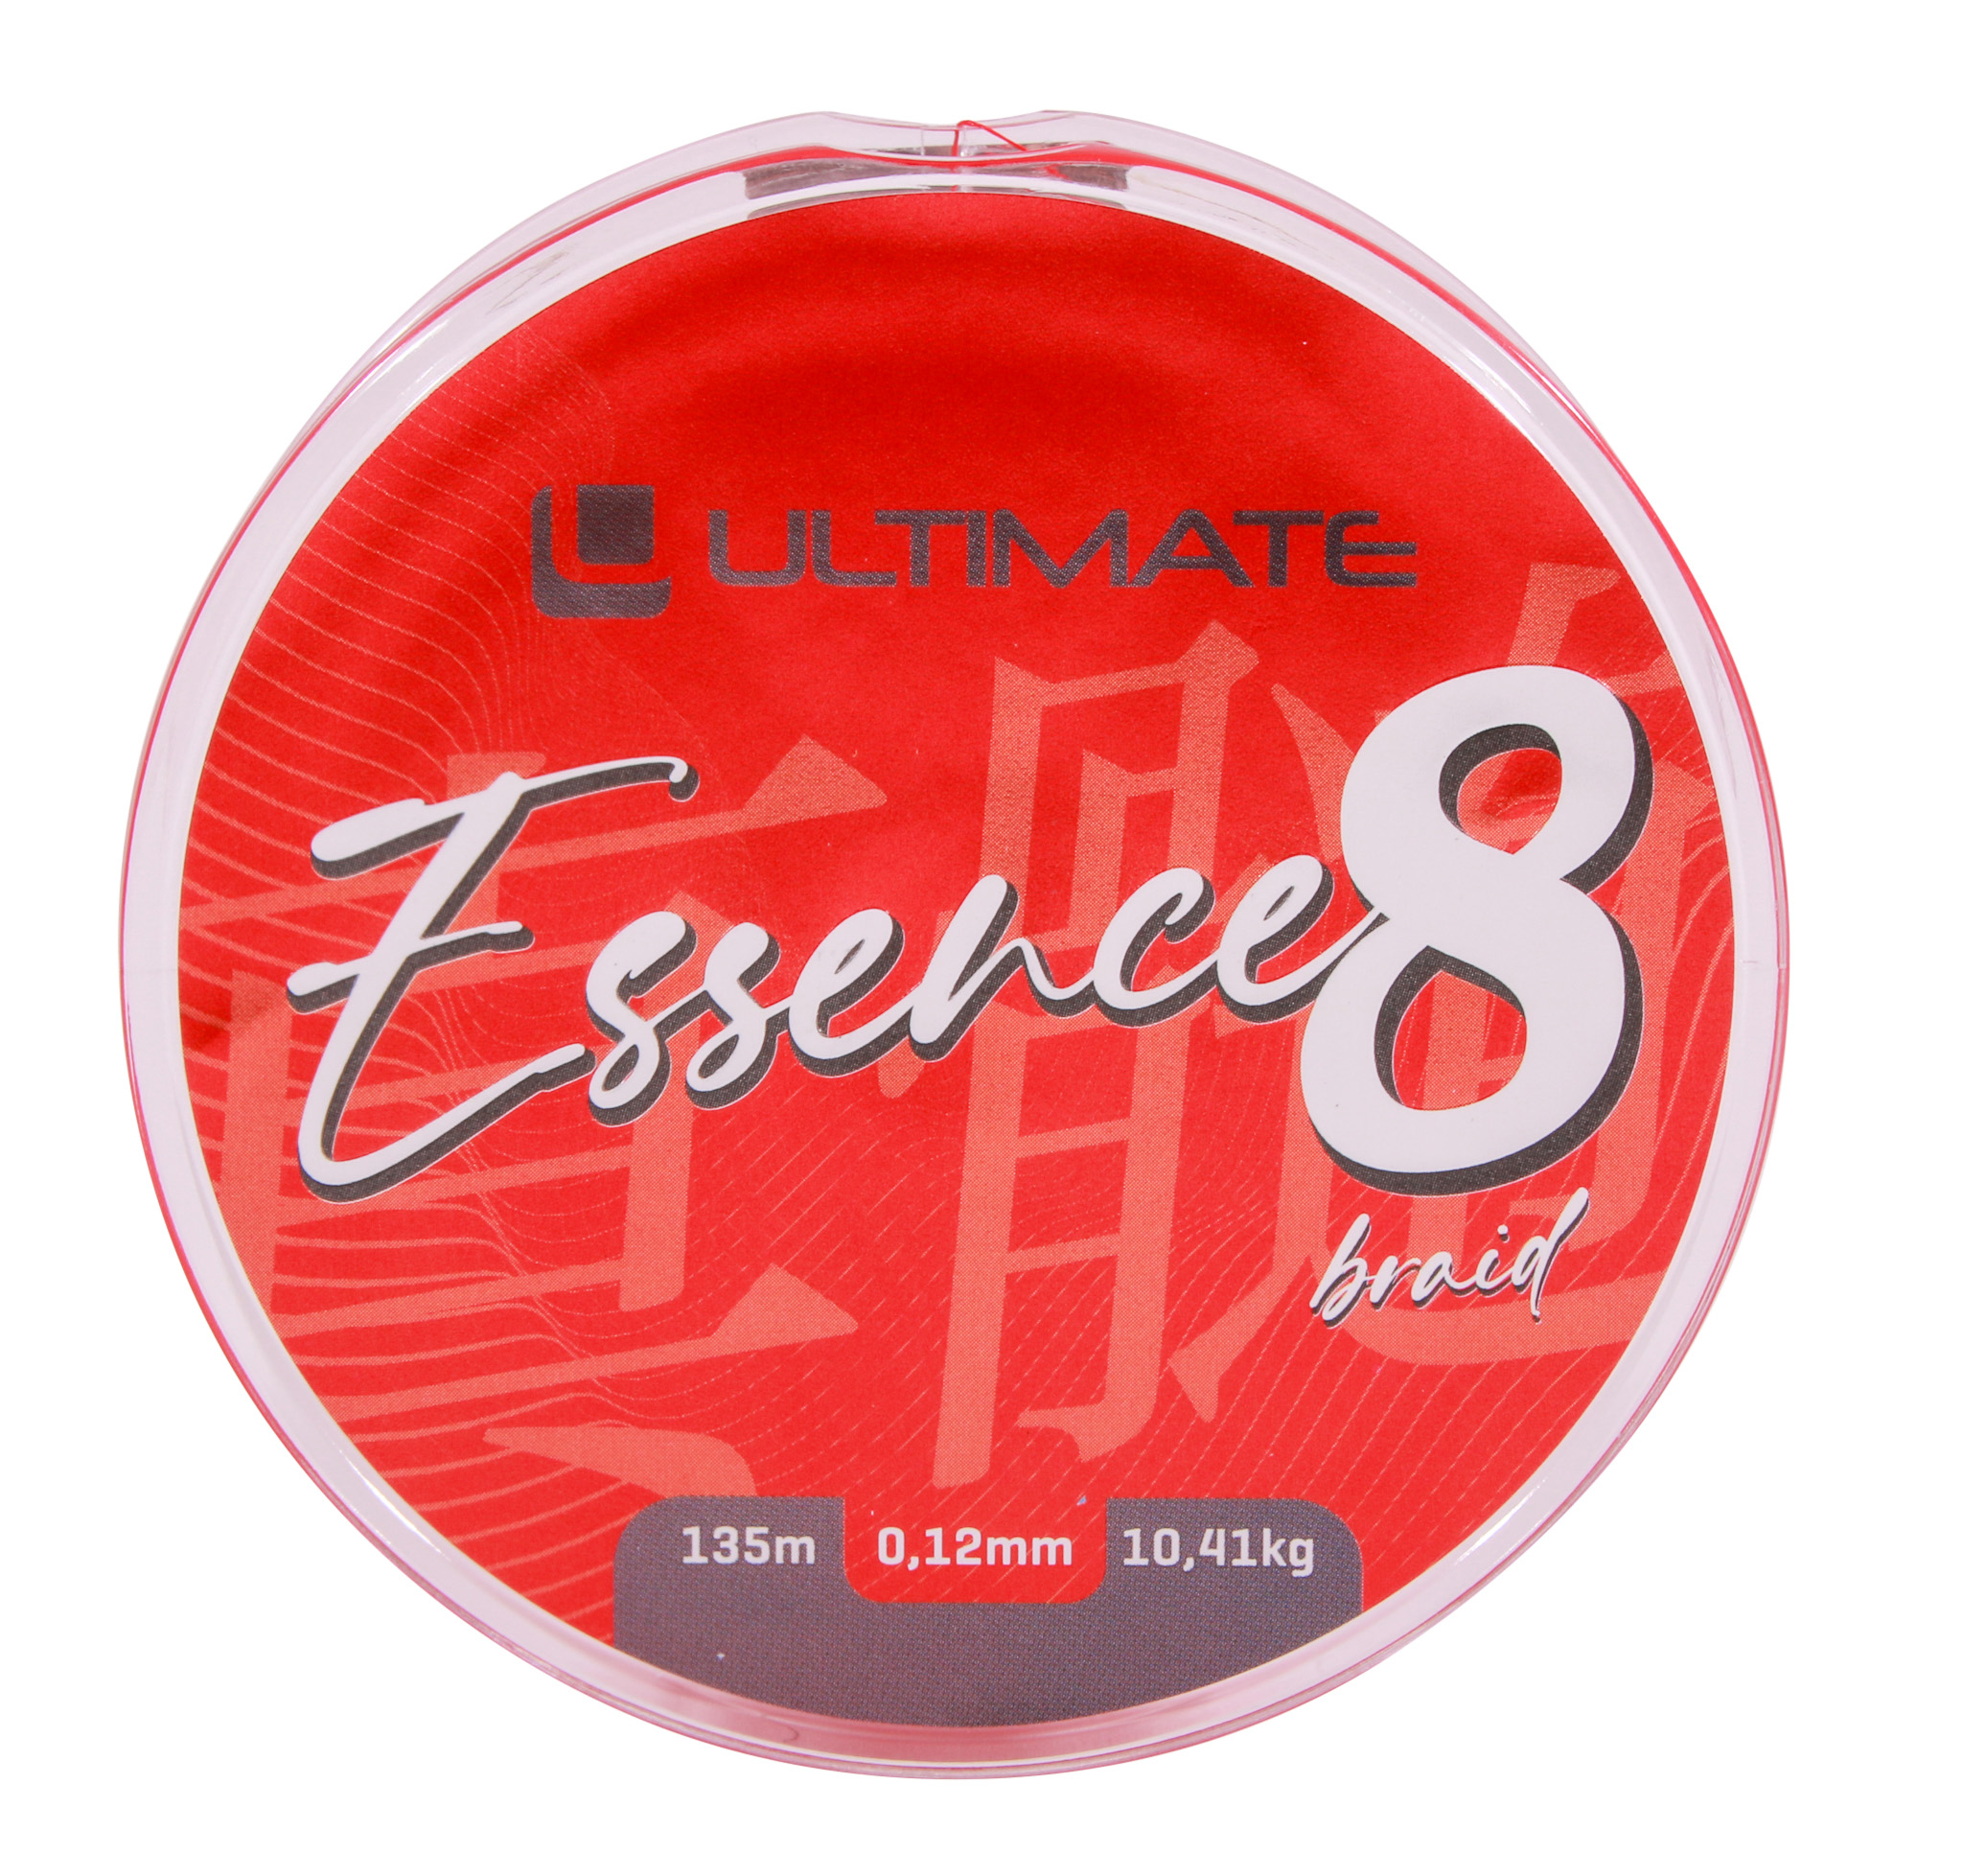 Tresse Ultimate Essence 8-Braid 135m